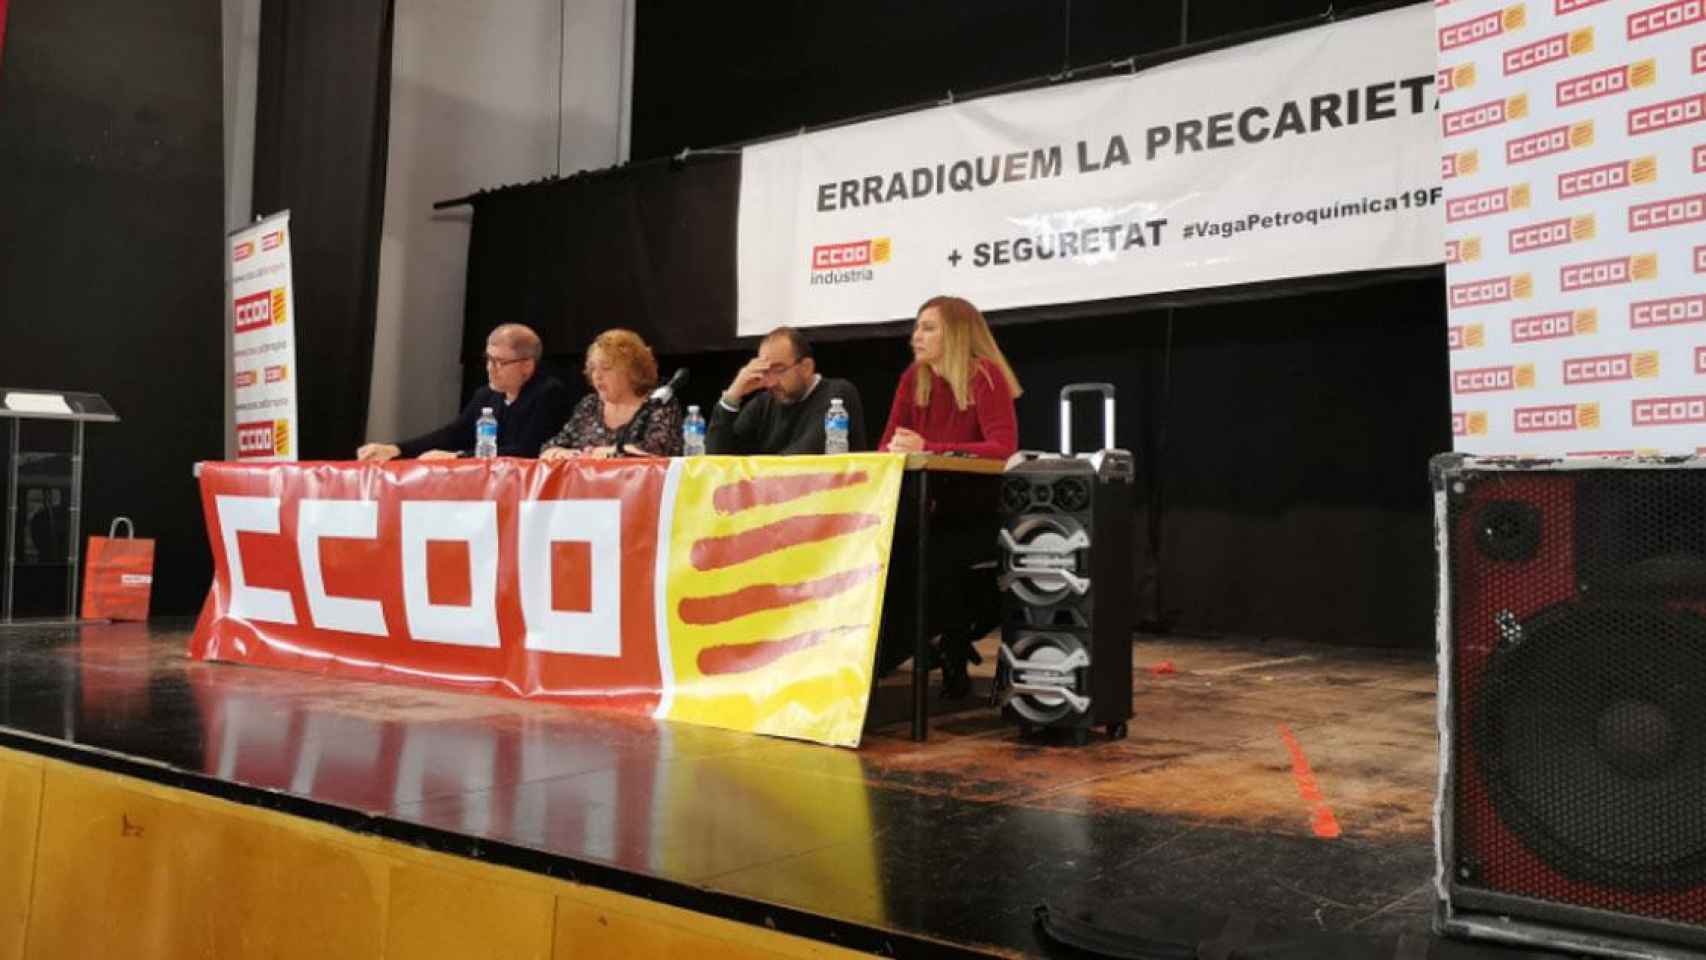 Miembros de CCOO comunican la convocatoria de huelga general en las petroquímicas Tarragona / @CCOOTarragona